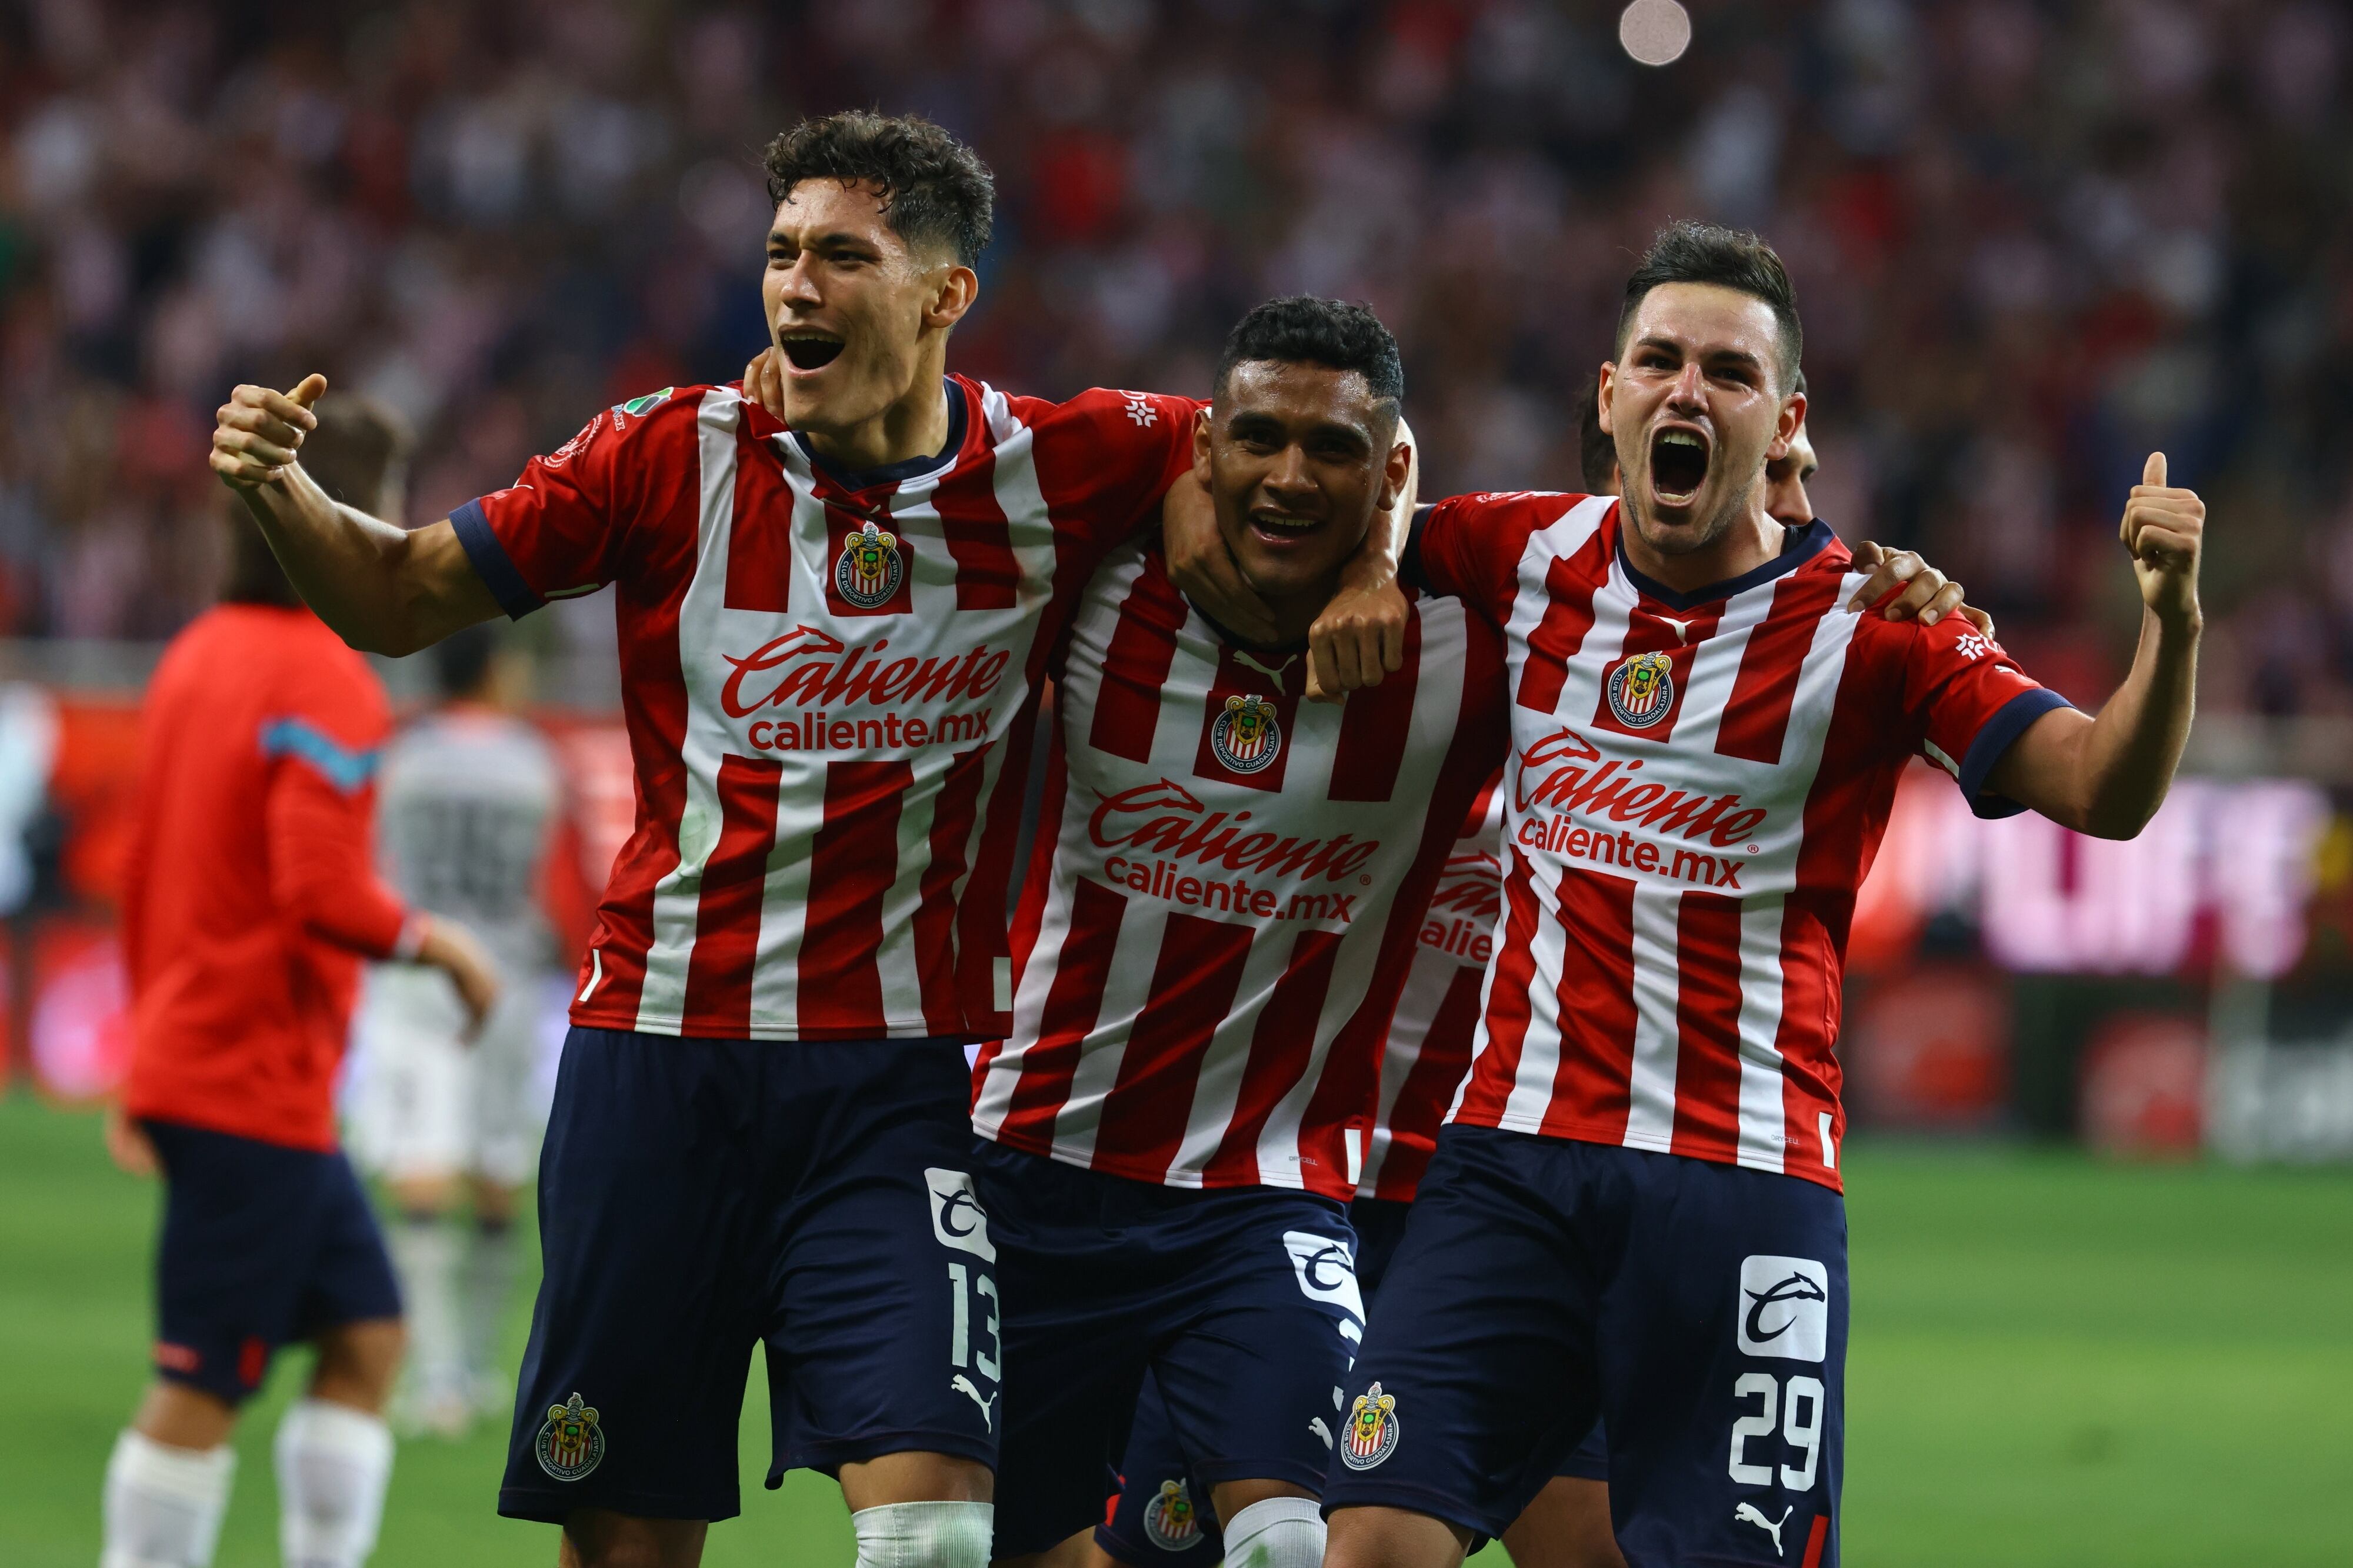 Boletos Chivas vs Forge Copa de Campeones Concacaf, Cuánto cuestan